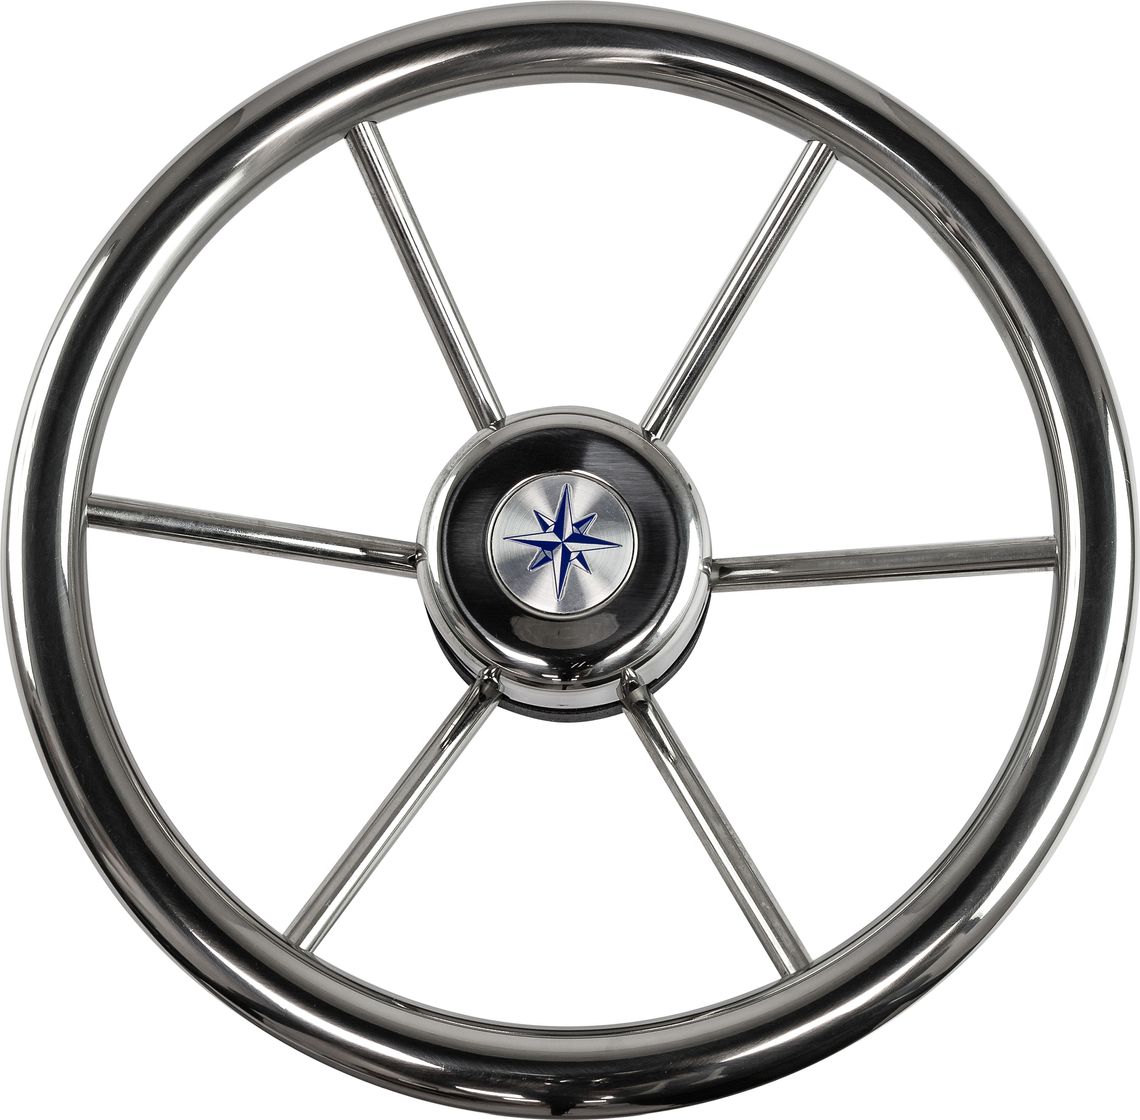 Рулевое колесо LEADER INOX нержавеющий обод серебряные спицы д. 320 мм VN7332-22 рулевое колесо leader wood деревянный обод серебряные спицы д 360 мм vn7360 33